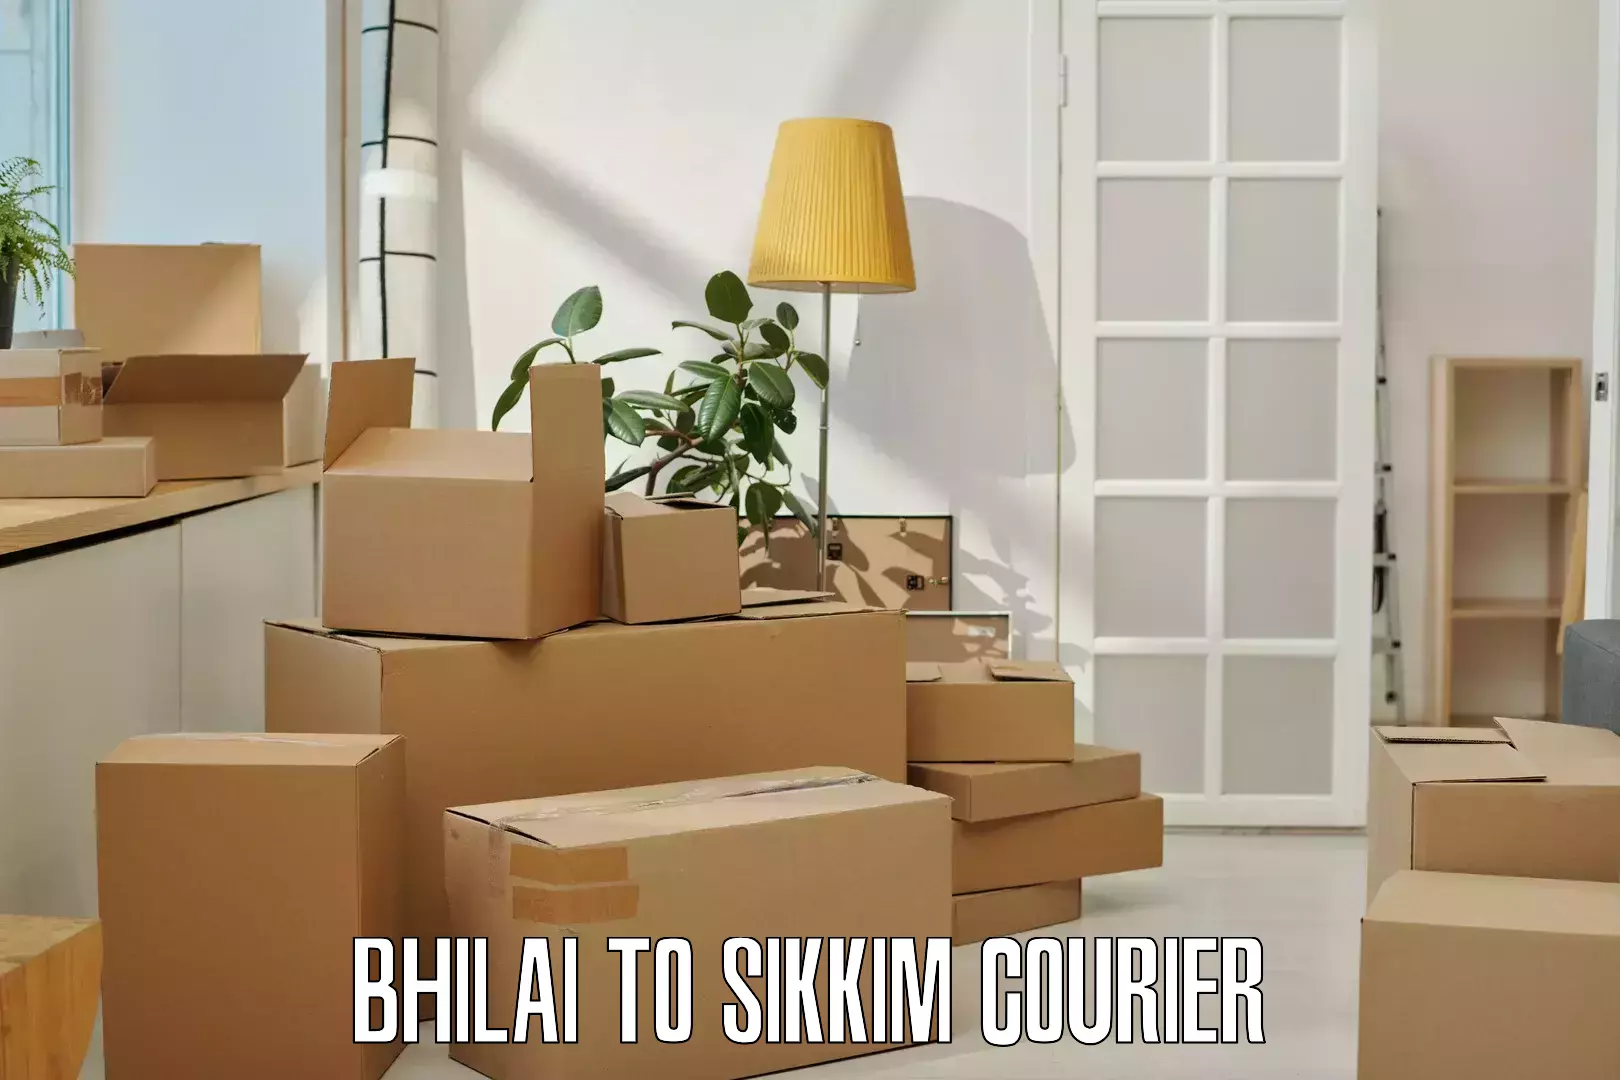 Efficient parcel service Bhilai to Sikkim